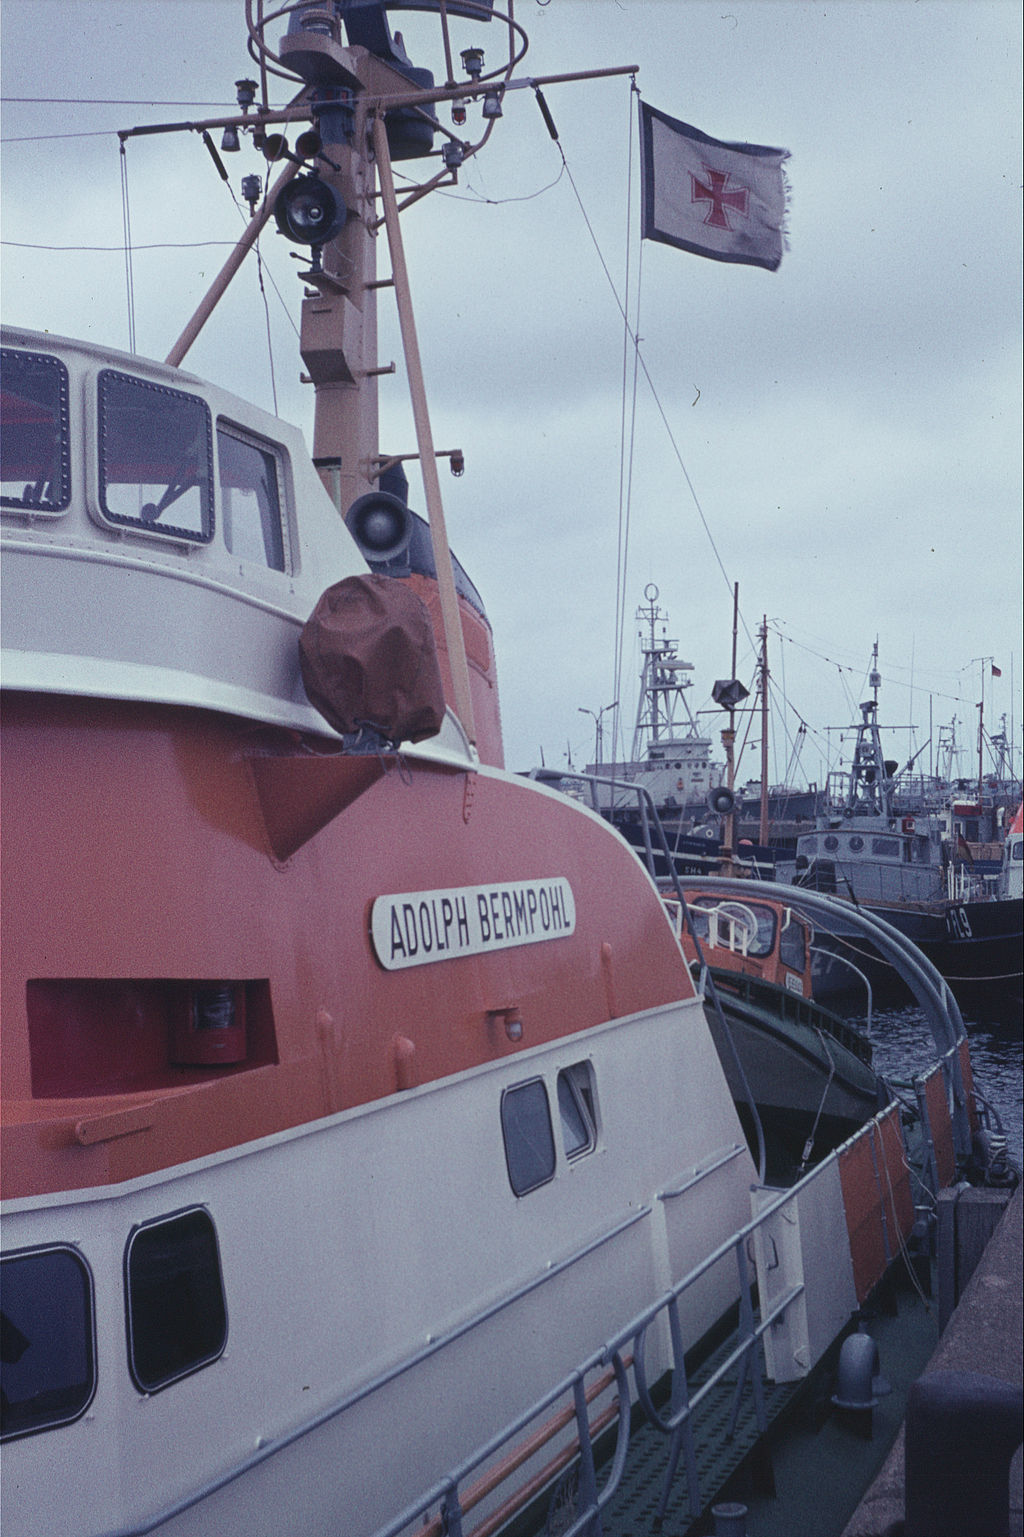 Die "Adolph Bermpohl" 1967 im Hafen von Helgoland, Foto: von G. Friedrich (Eigenes Werk) [GFDL (http://www.gnu.org/copyleft/fdl.html) oder CC BY 3.0 (http://creativecommons.org/licenses/by/3.0)], via Wikimedia Commons